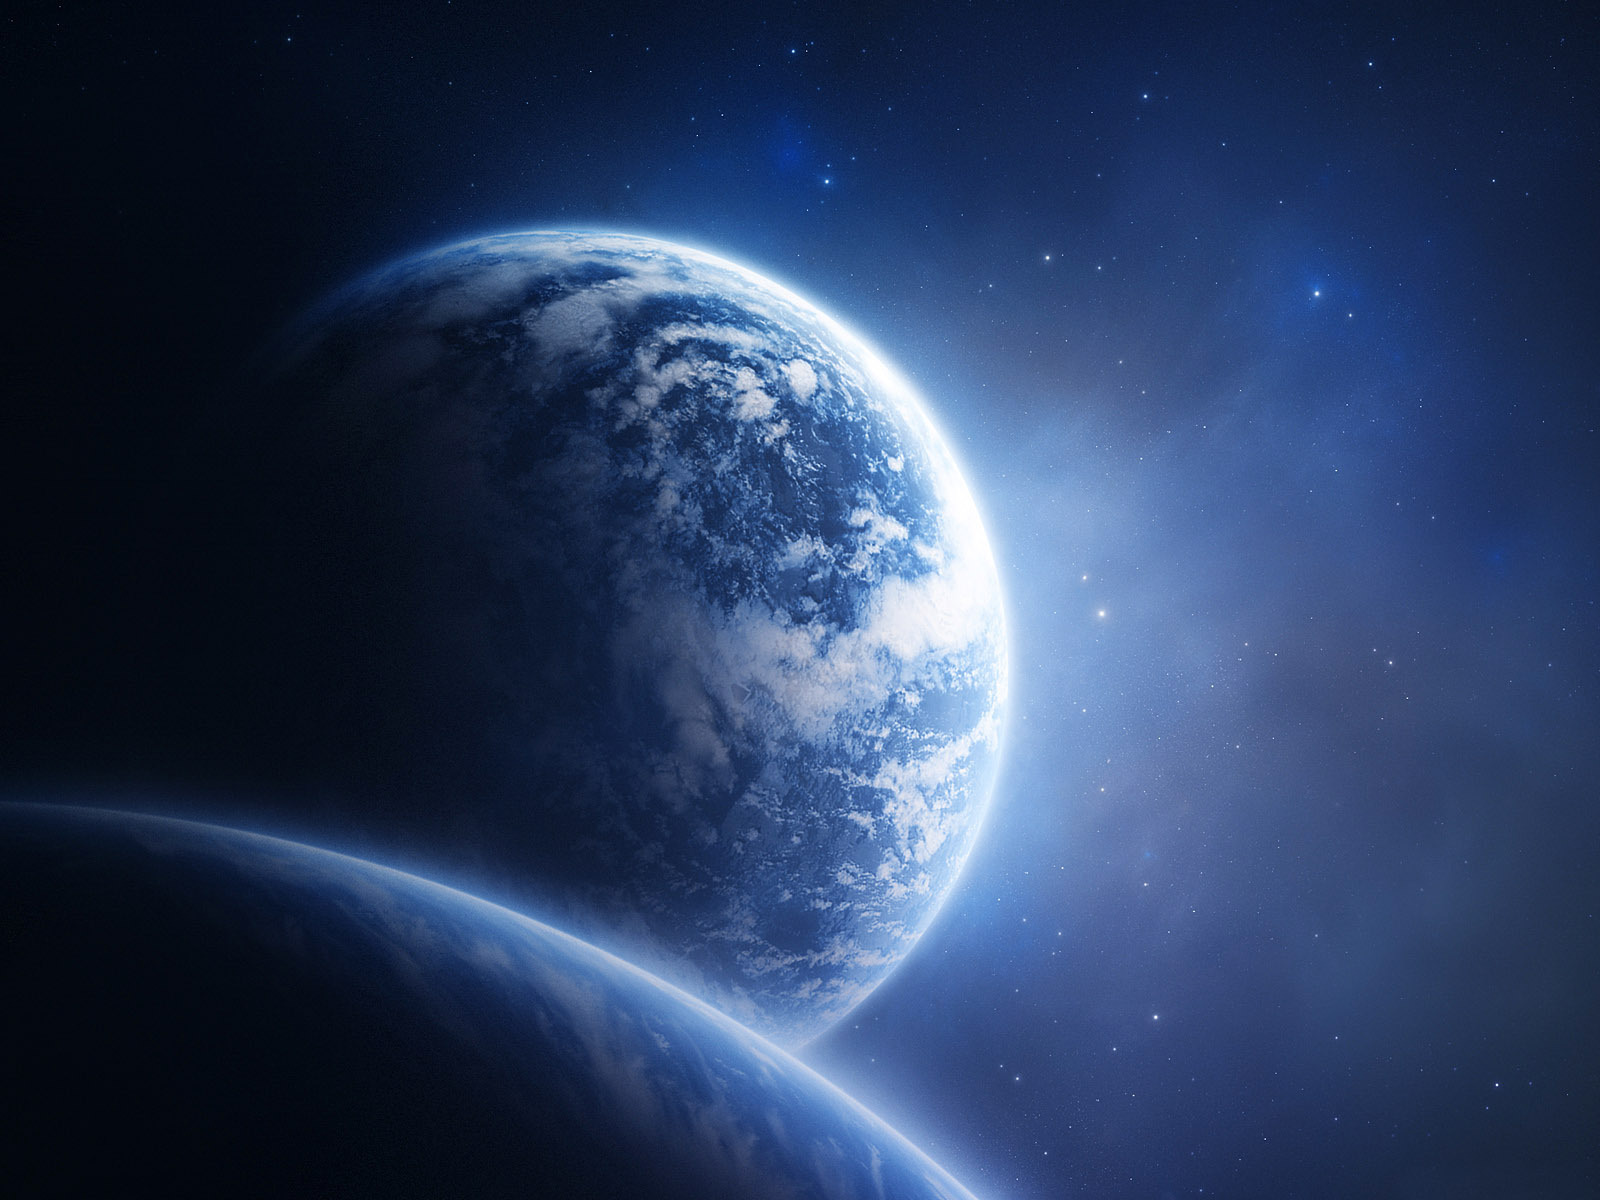 universo fondo de pantalla,espacio exterior,atmósfera,planeta,naturaleza,objeto astronómico